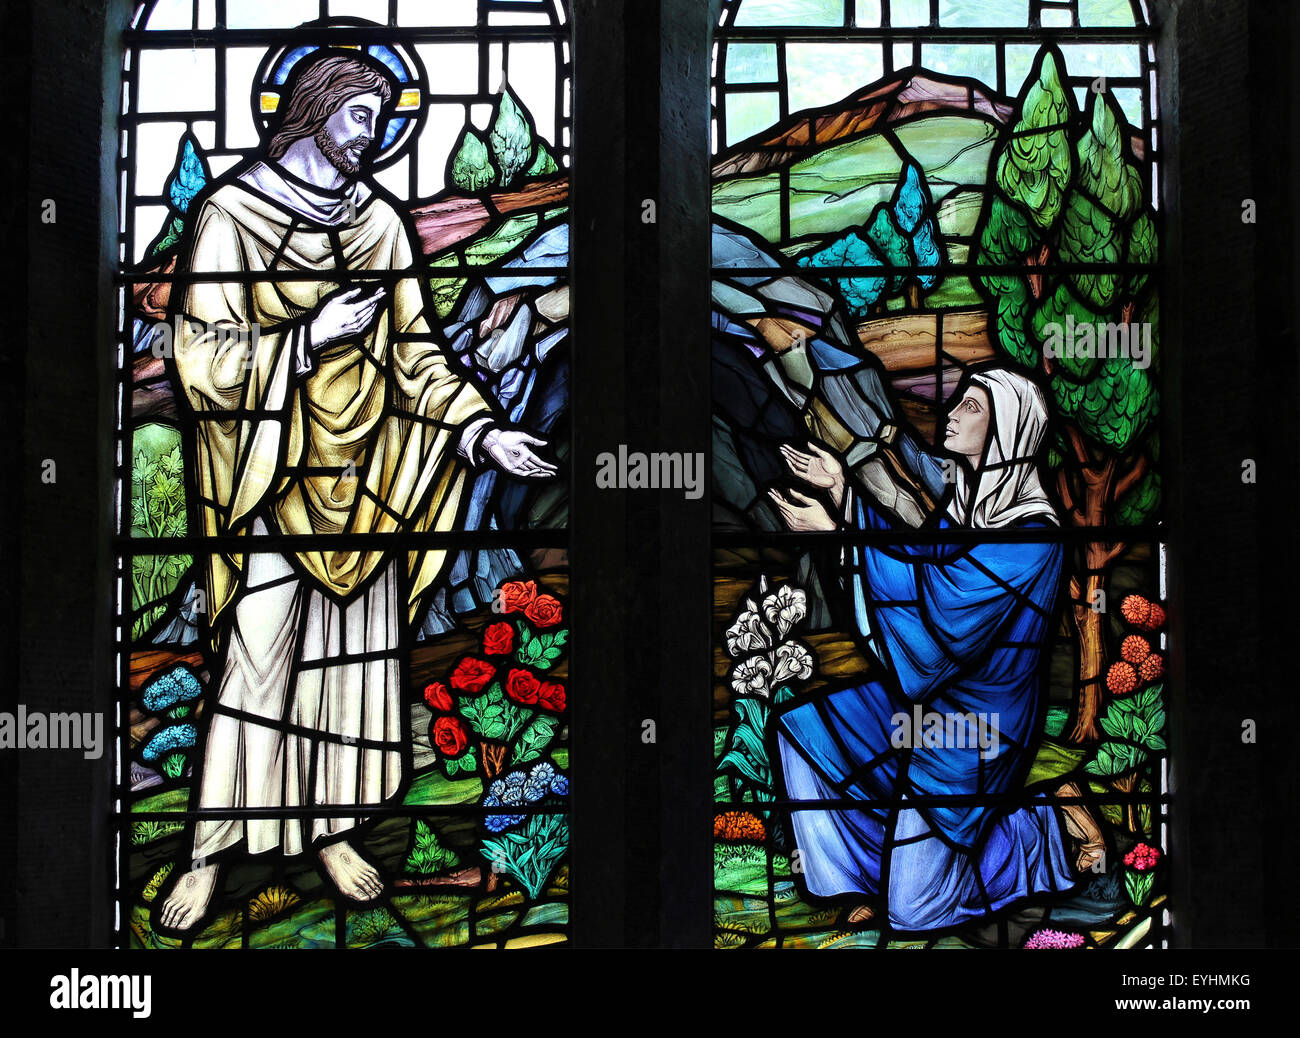 Le Christ ressuscité apparaissant à St Mary Magdalene, Église de St, Seiriol Penmon, Anglesey mur nord du choeur Banque D'Images